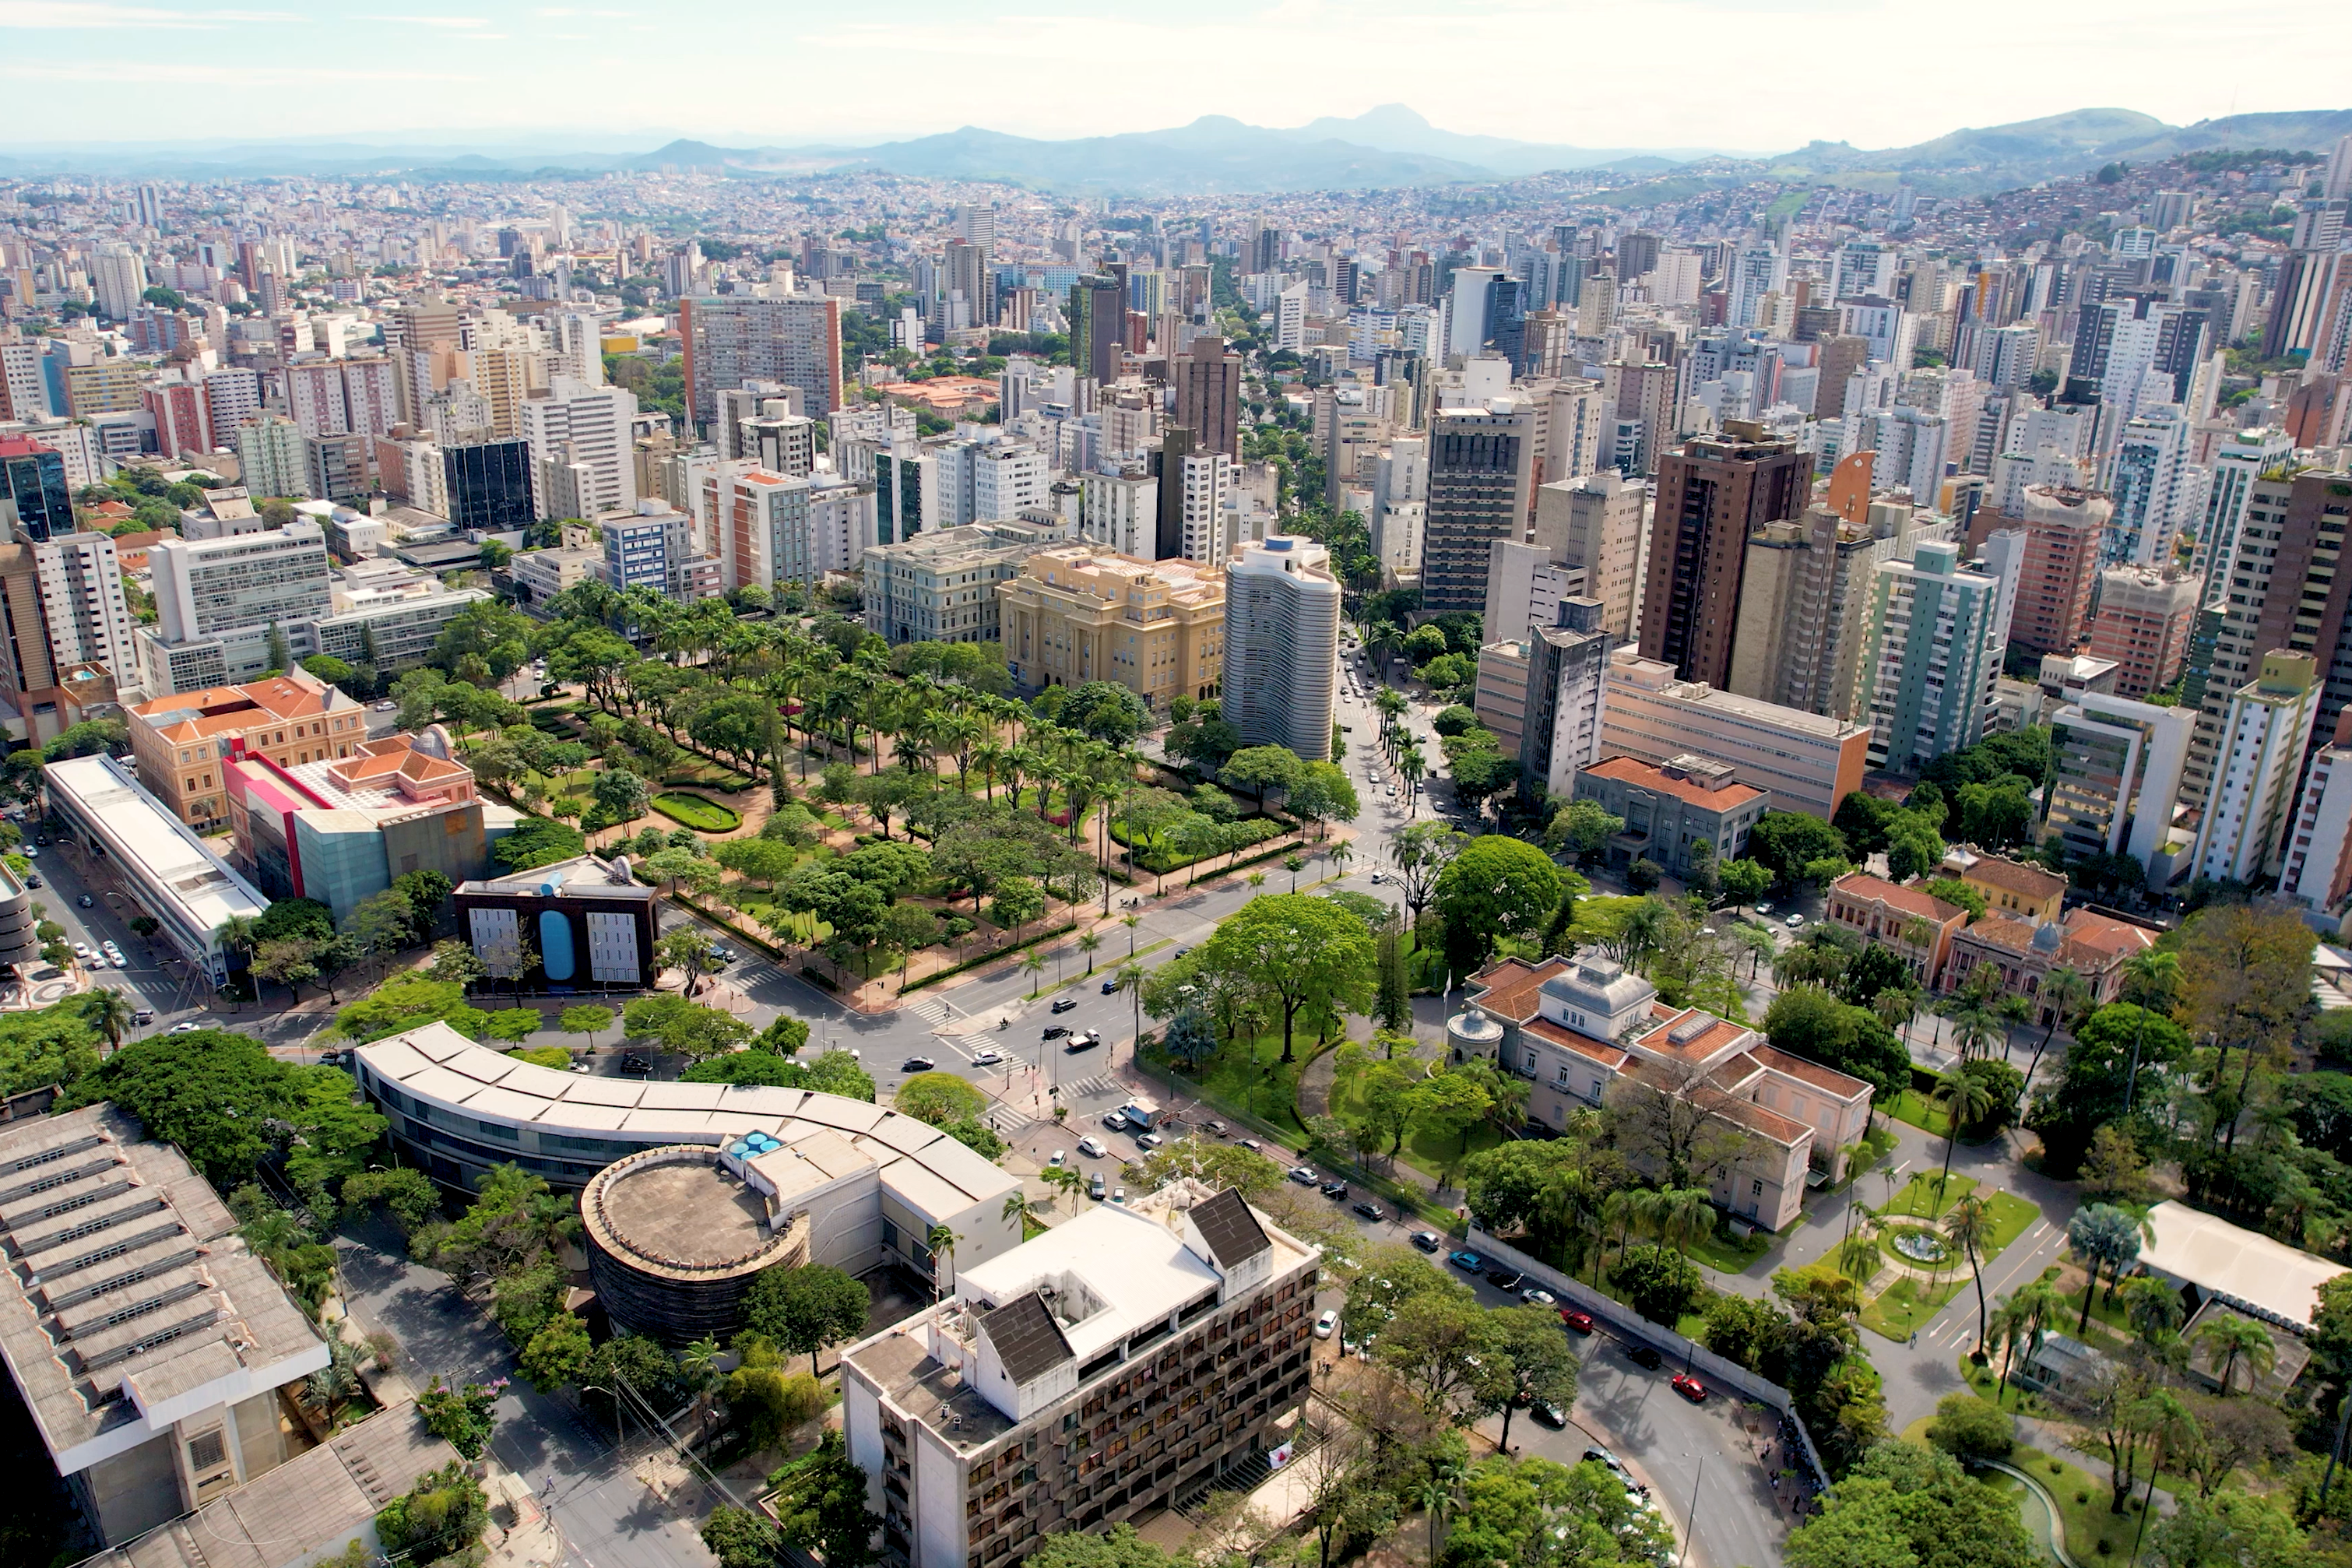 Belo Horizonte (Minas Gerais - Région Sud-Est) - Depuis 2021,  la méthodologie des Destinations Touristiques Intelligentes a été appliquée au Brésil. Découvrez les 12 Smart Tourism Destinations du Brésil